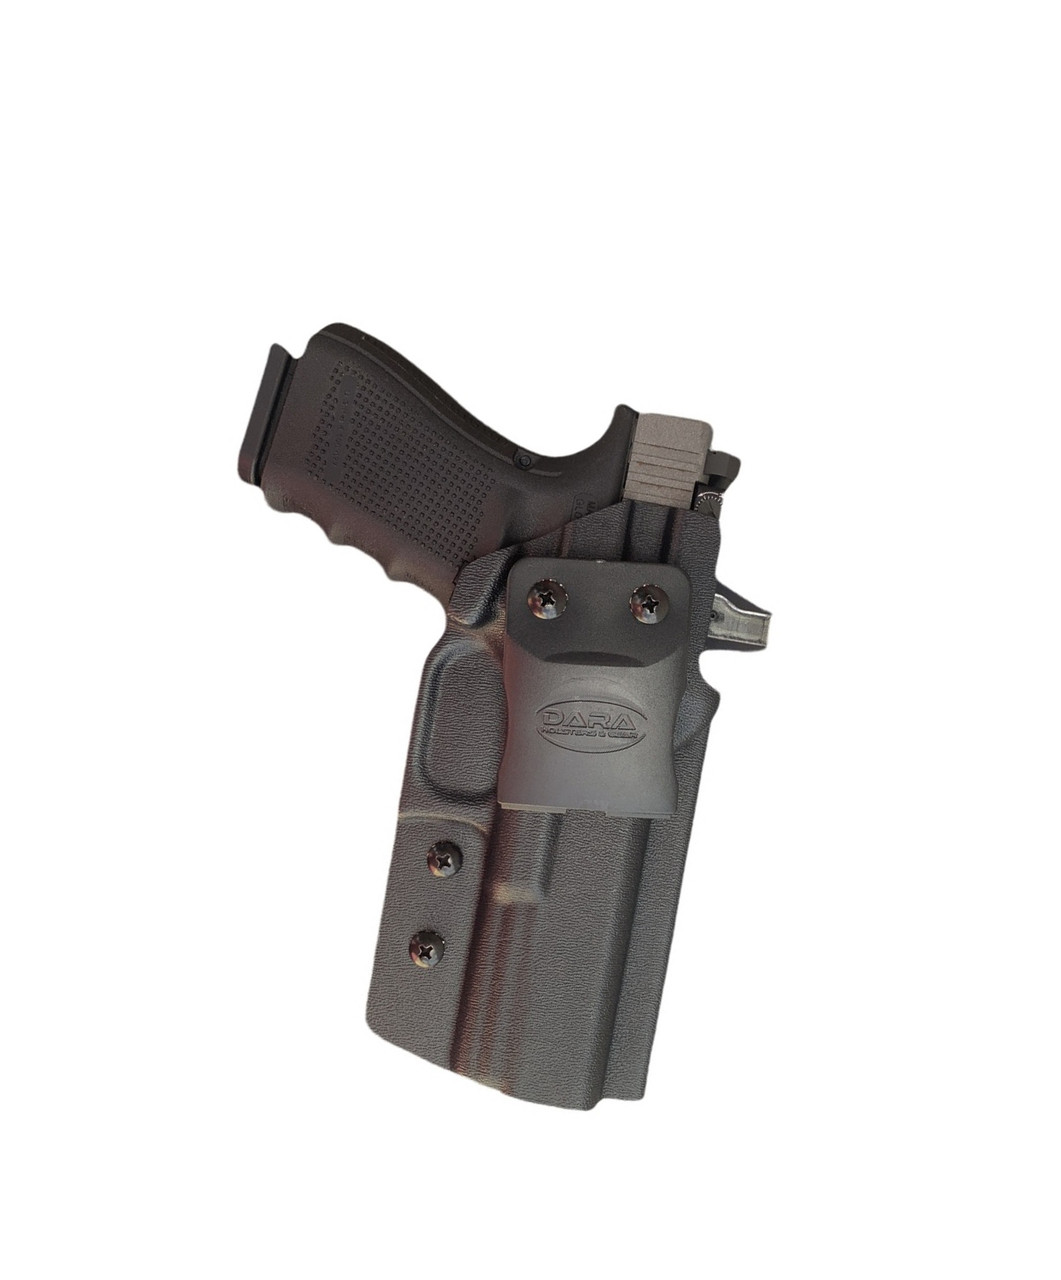 IWB Holster for Glock 34/17/19